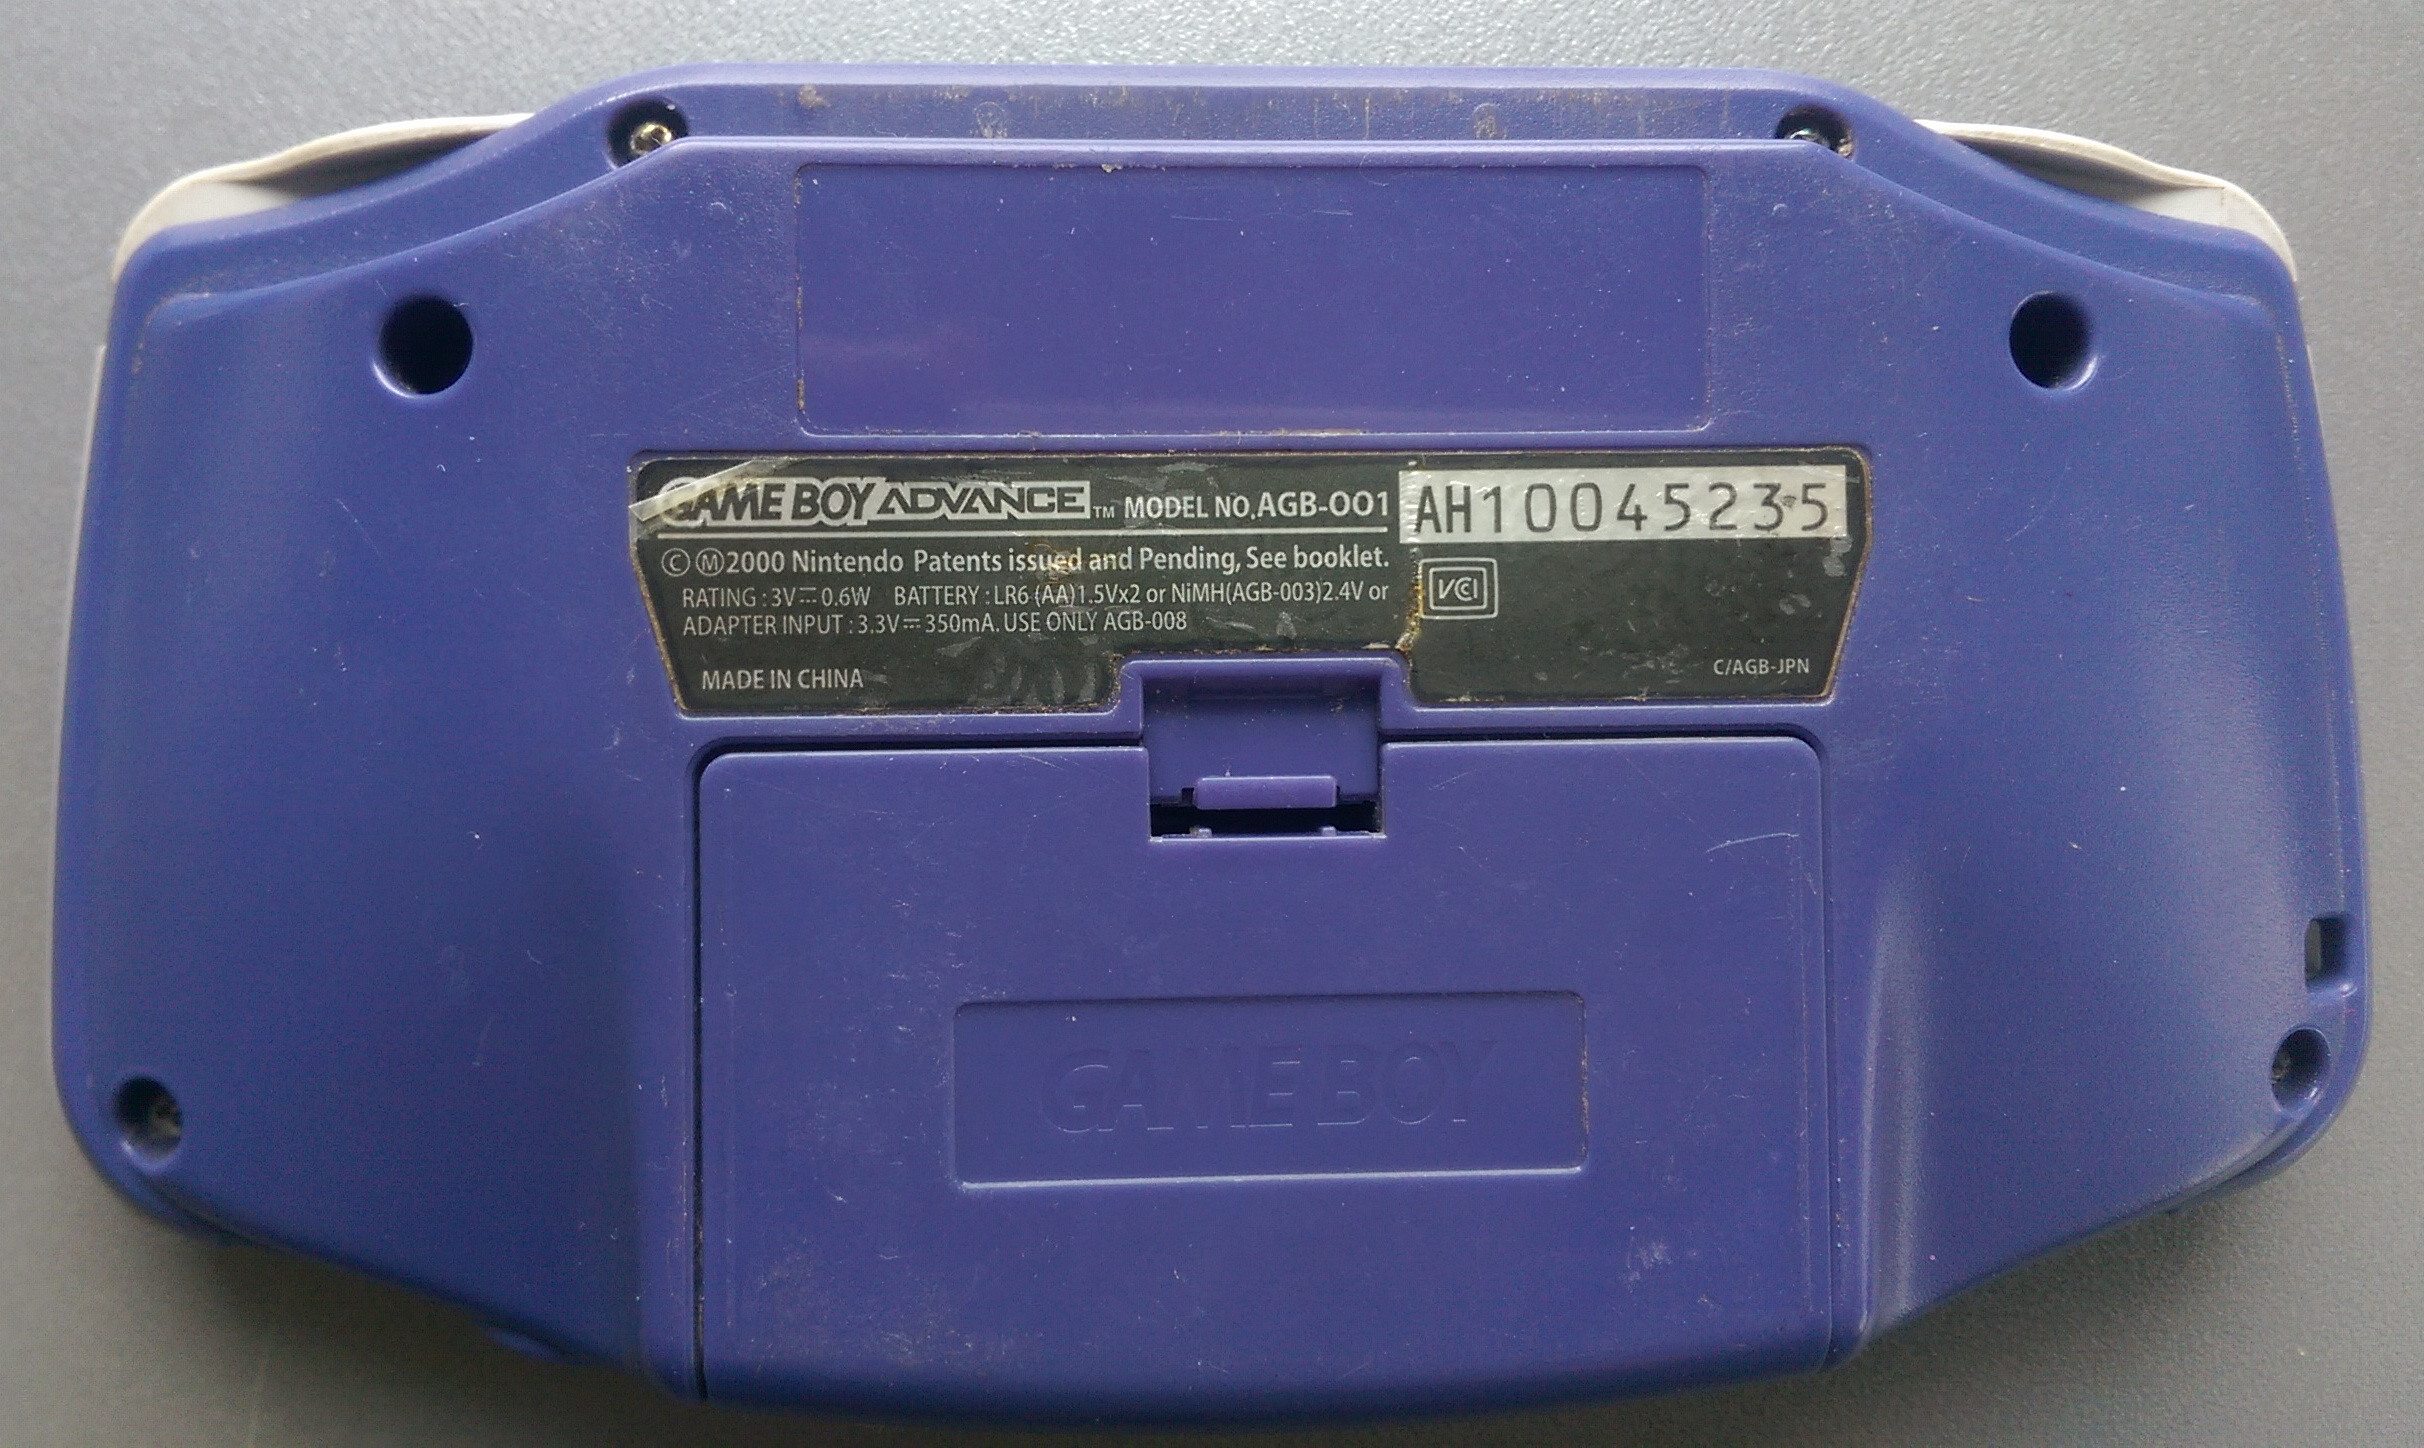 AGB: AH10045235 [gekkio] - Game Boy hardware database